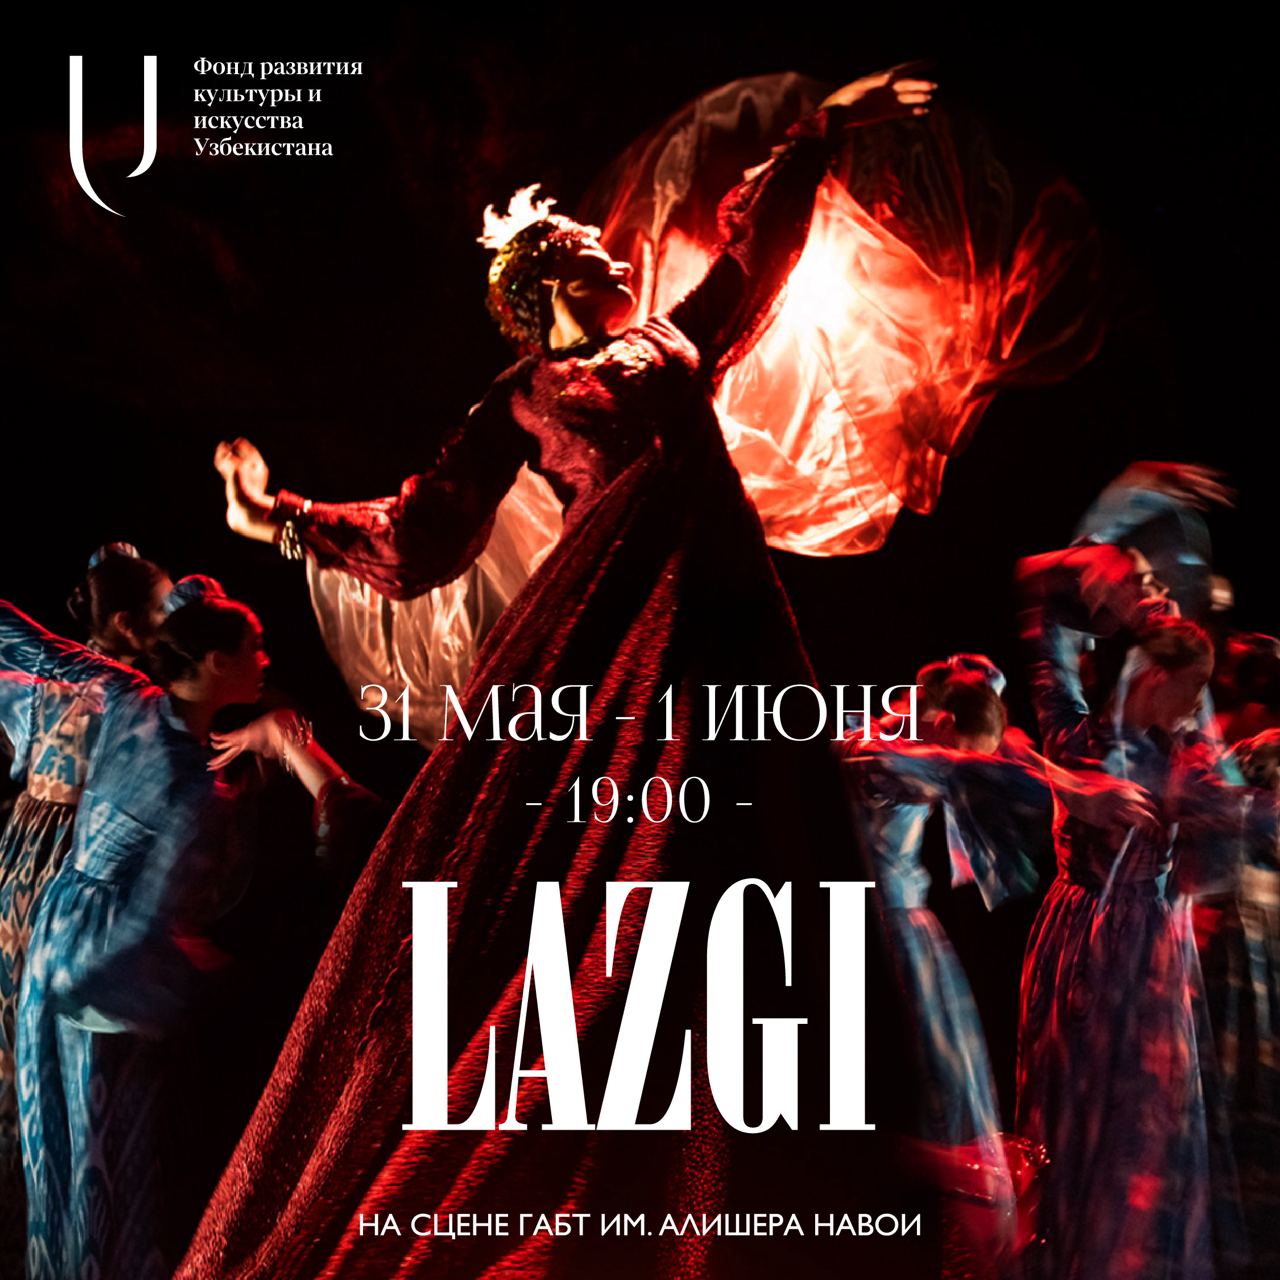 Балетный спектакль «Лазги. Танец души и любви» будет показан в Ташкенте 31 мая и 1 июня 2024 года